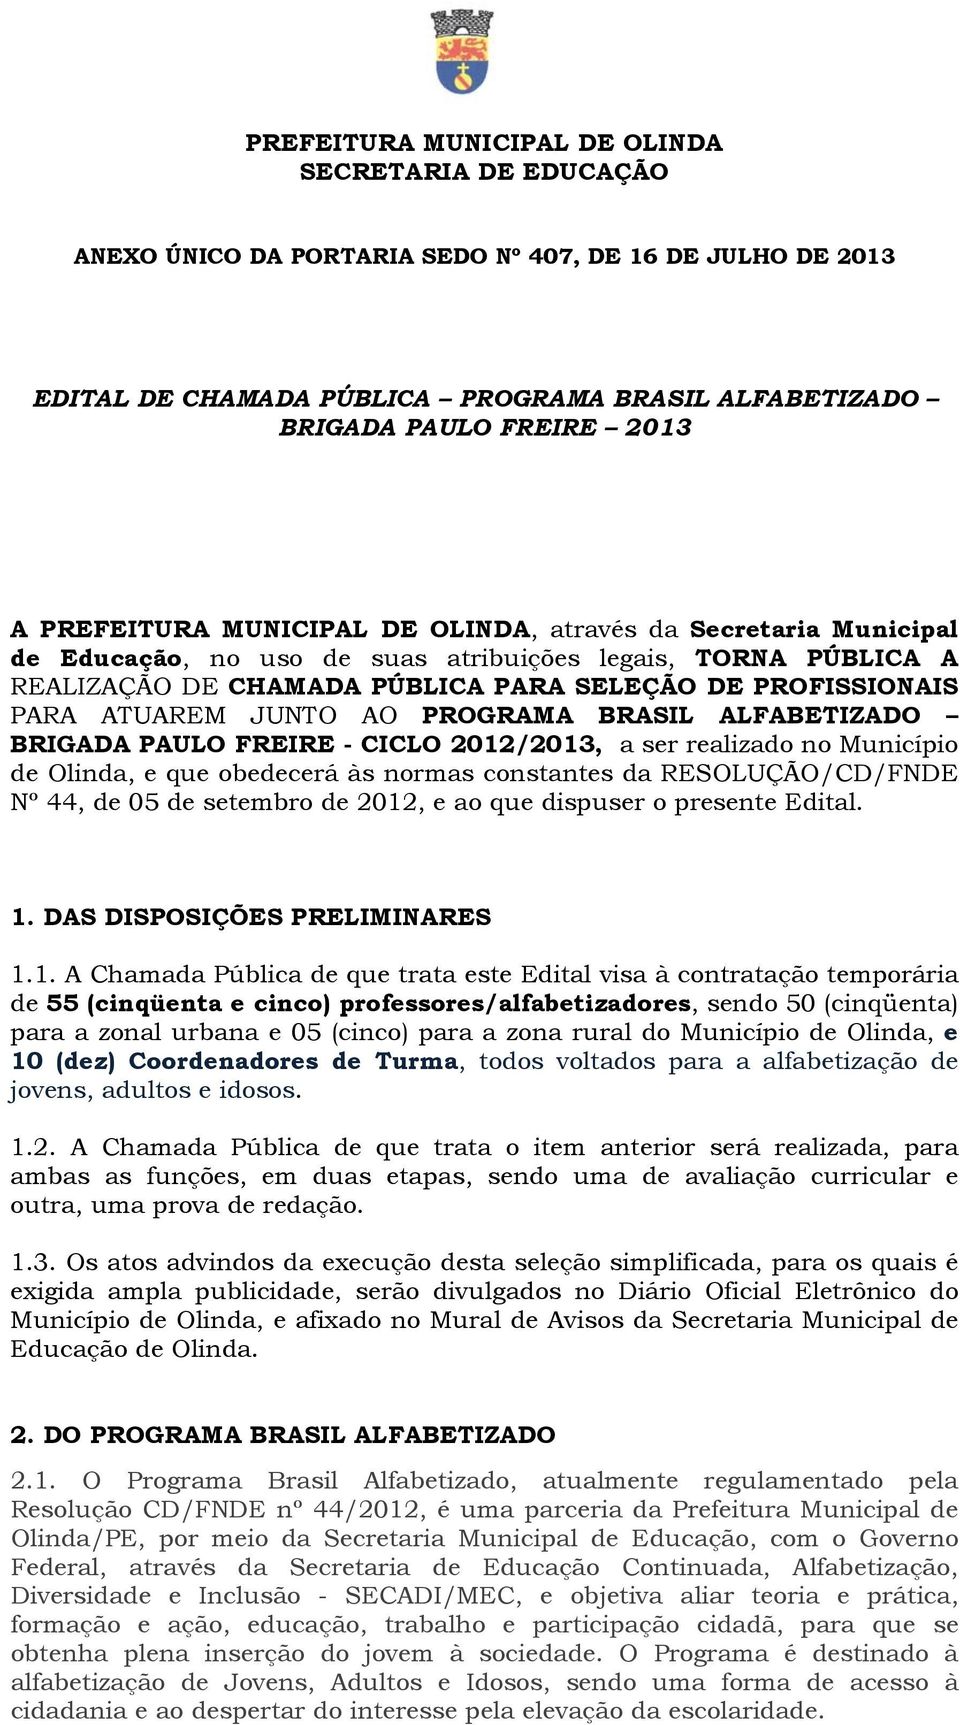 ATUAREM JUNTO AO PROGRAMA BRASIL ALFABETIZADO BRIGADA PAULO FREIRE - CICLO 2012/2013, a ser realizado no Município de Olinda, e que obedecerá às normas constantes da RESOLUÇÃO/CD/FNDE Nº 44, de 05 de